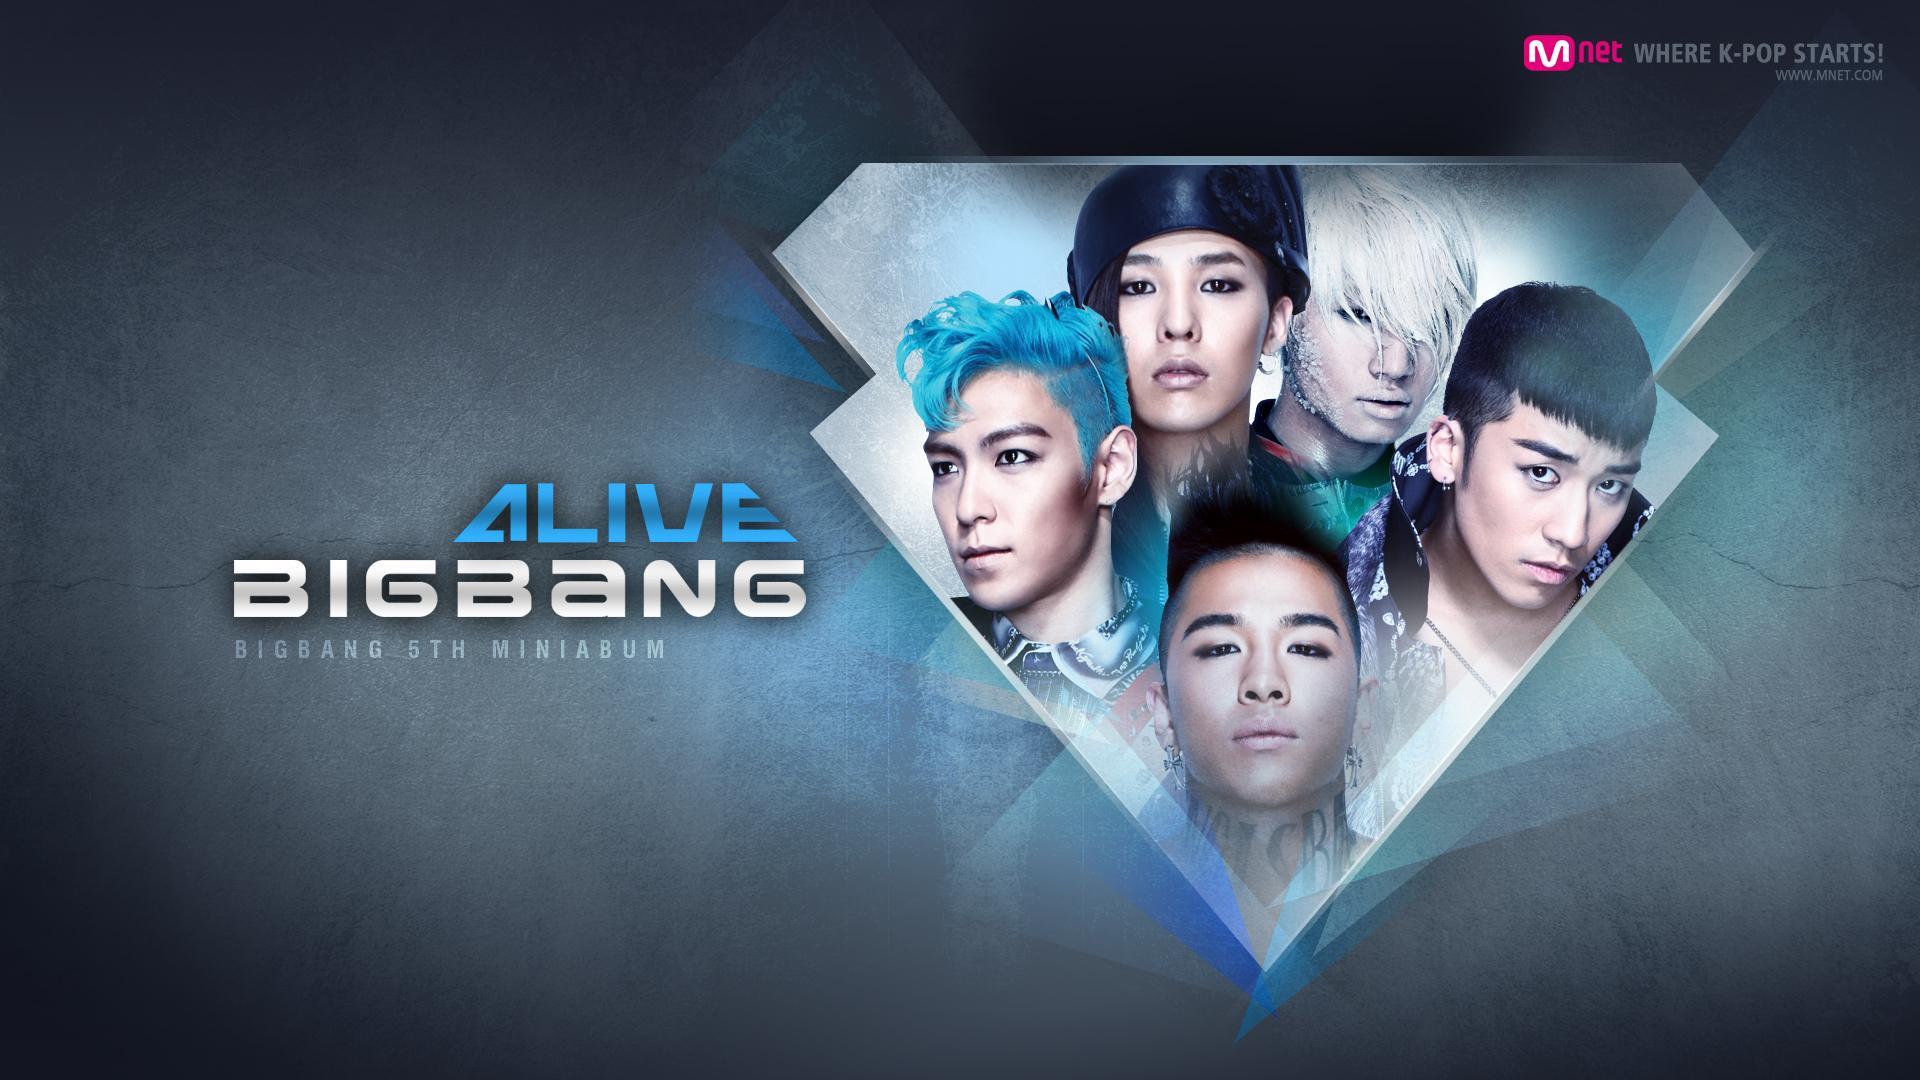 Big bang 1. Биг бэнг группа. Корейская группа big Bang. Big Bang группа логотип. К поп группа Биг бэнг.